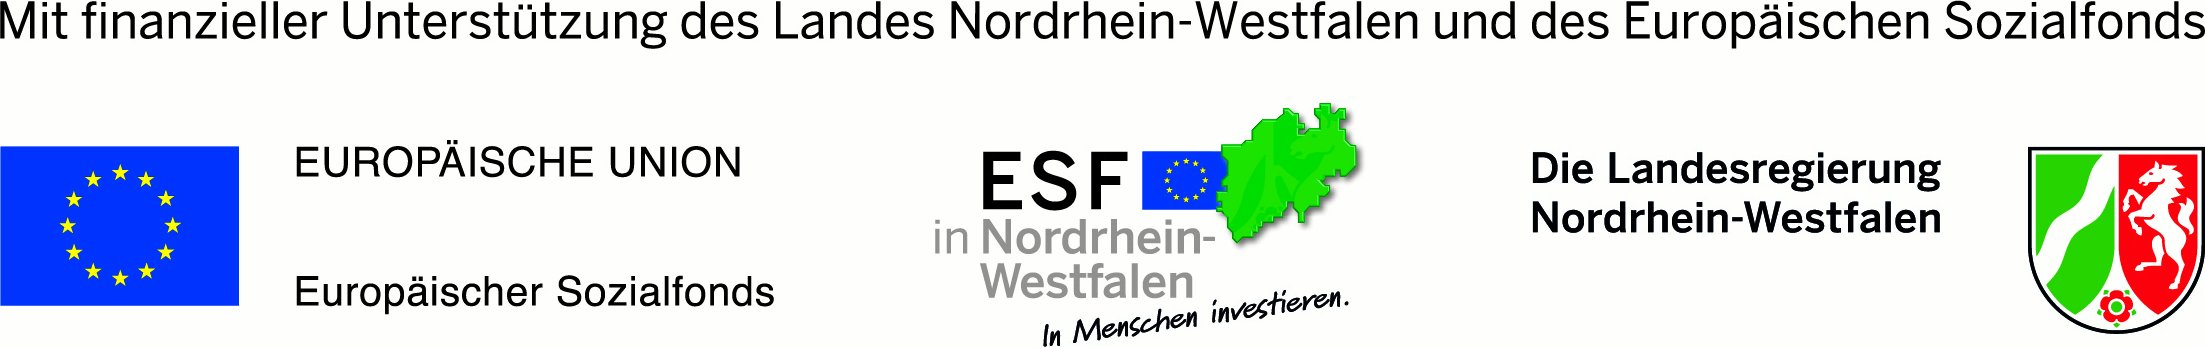 eu_esf-nrw_landesregierung_fh_4c-logo